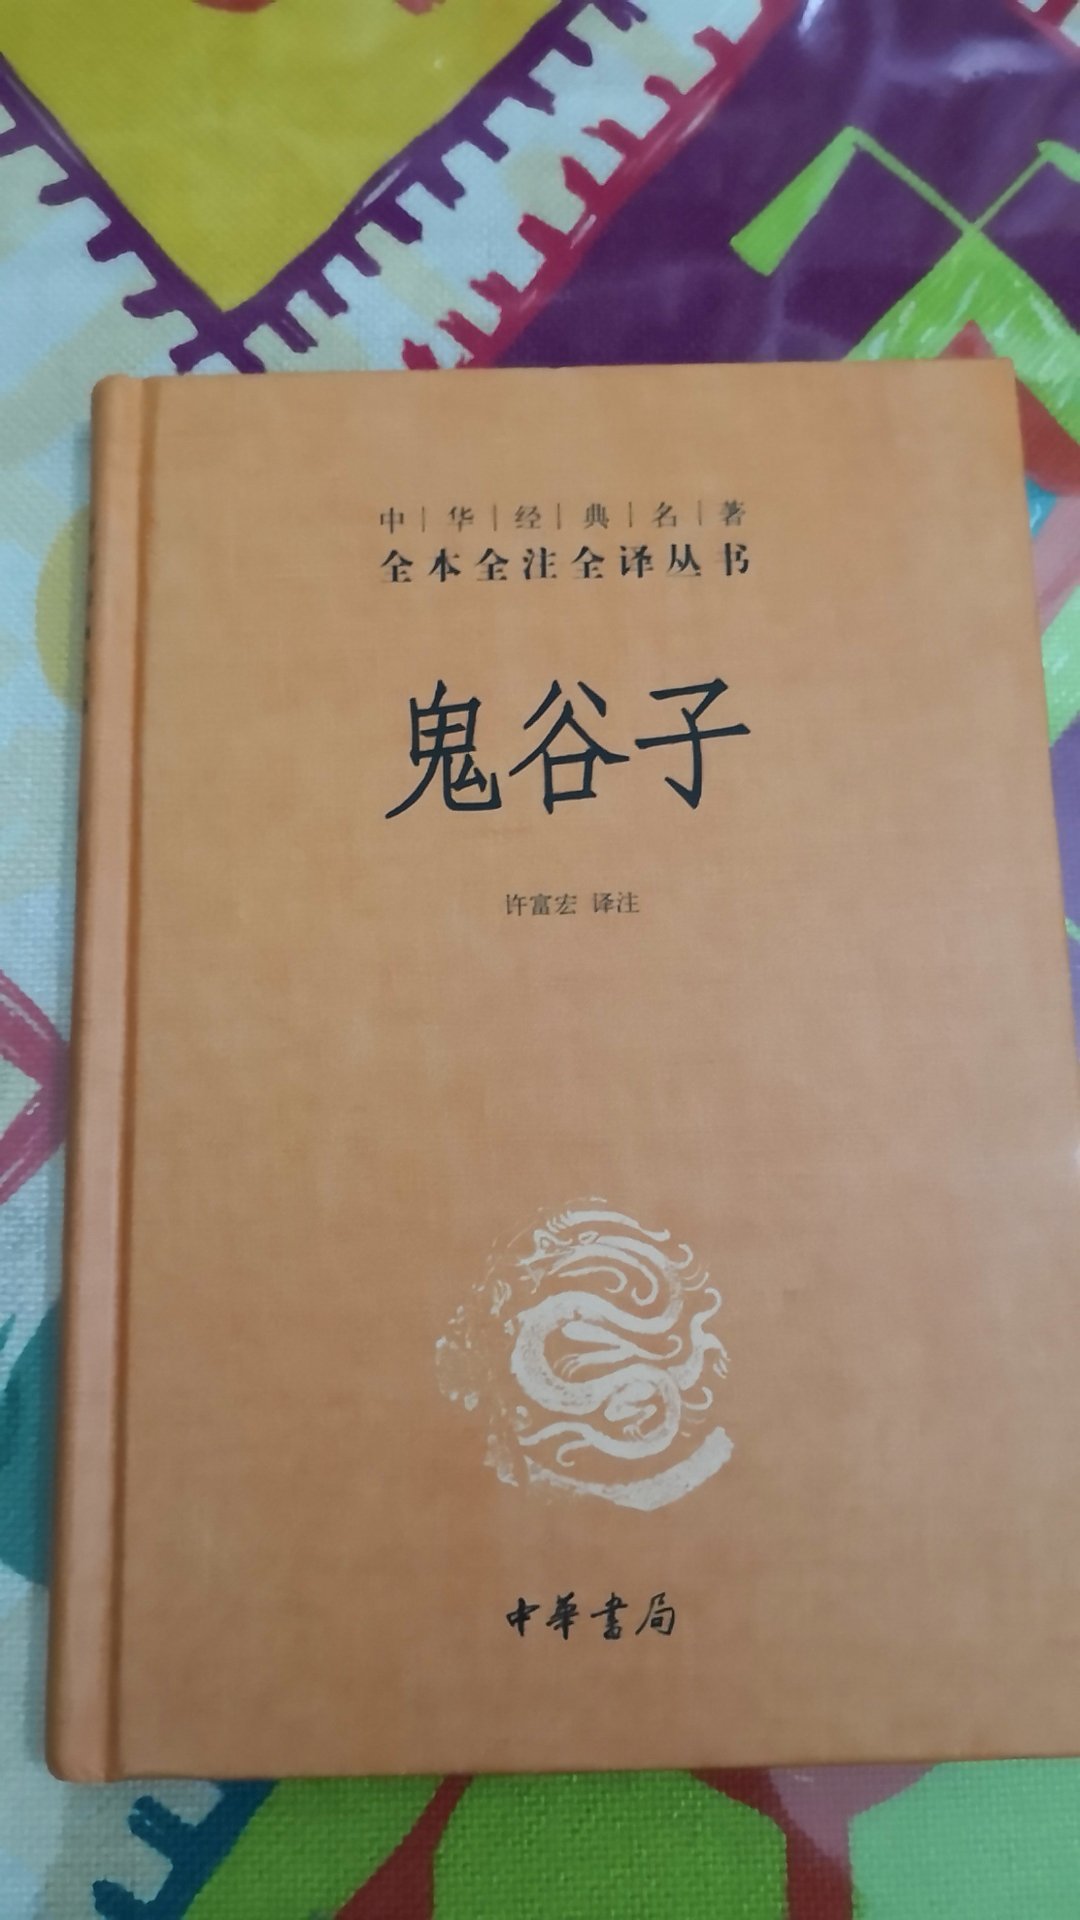 中华经典，相当的好，值得一读，好好看看，非常满意！